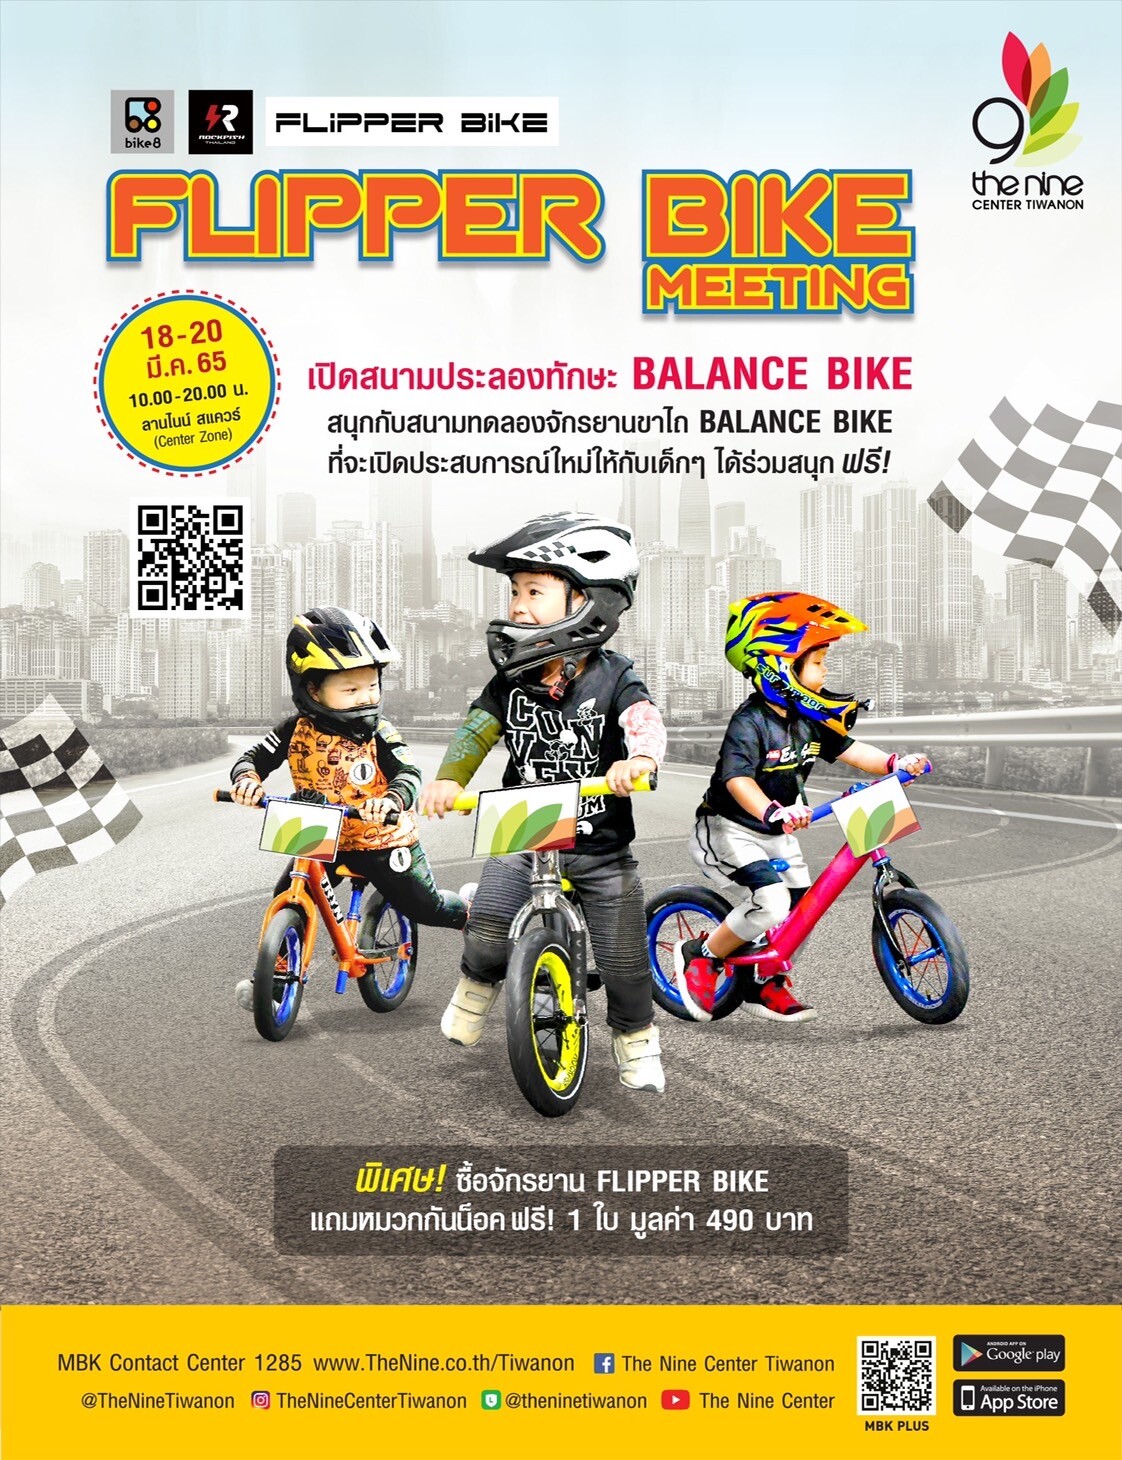 นักซิ่งจิ๋วเตรียมตัวให้พร้อม! เดอะไนน์ เซ็นเตอร์ ติวานนท์ เปิดสนามจักรยานขาไถ "Flipper Bike Meeting" เล่นสนุกพร้อมเสริมพัฒนาการ ฟรี! ตลอดงาน